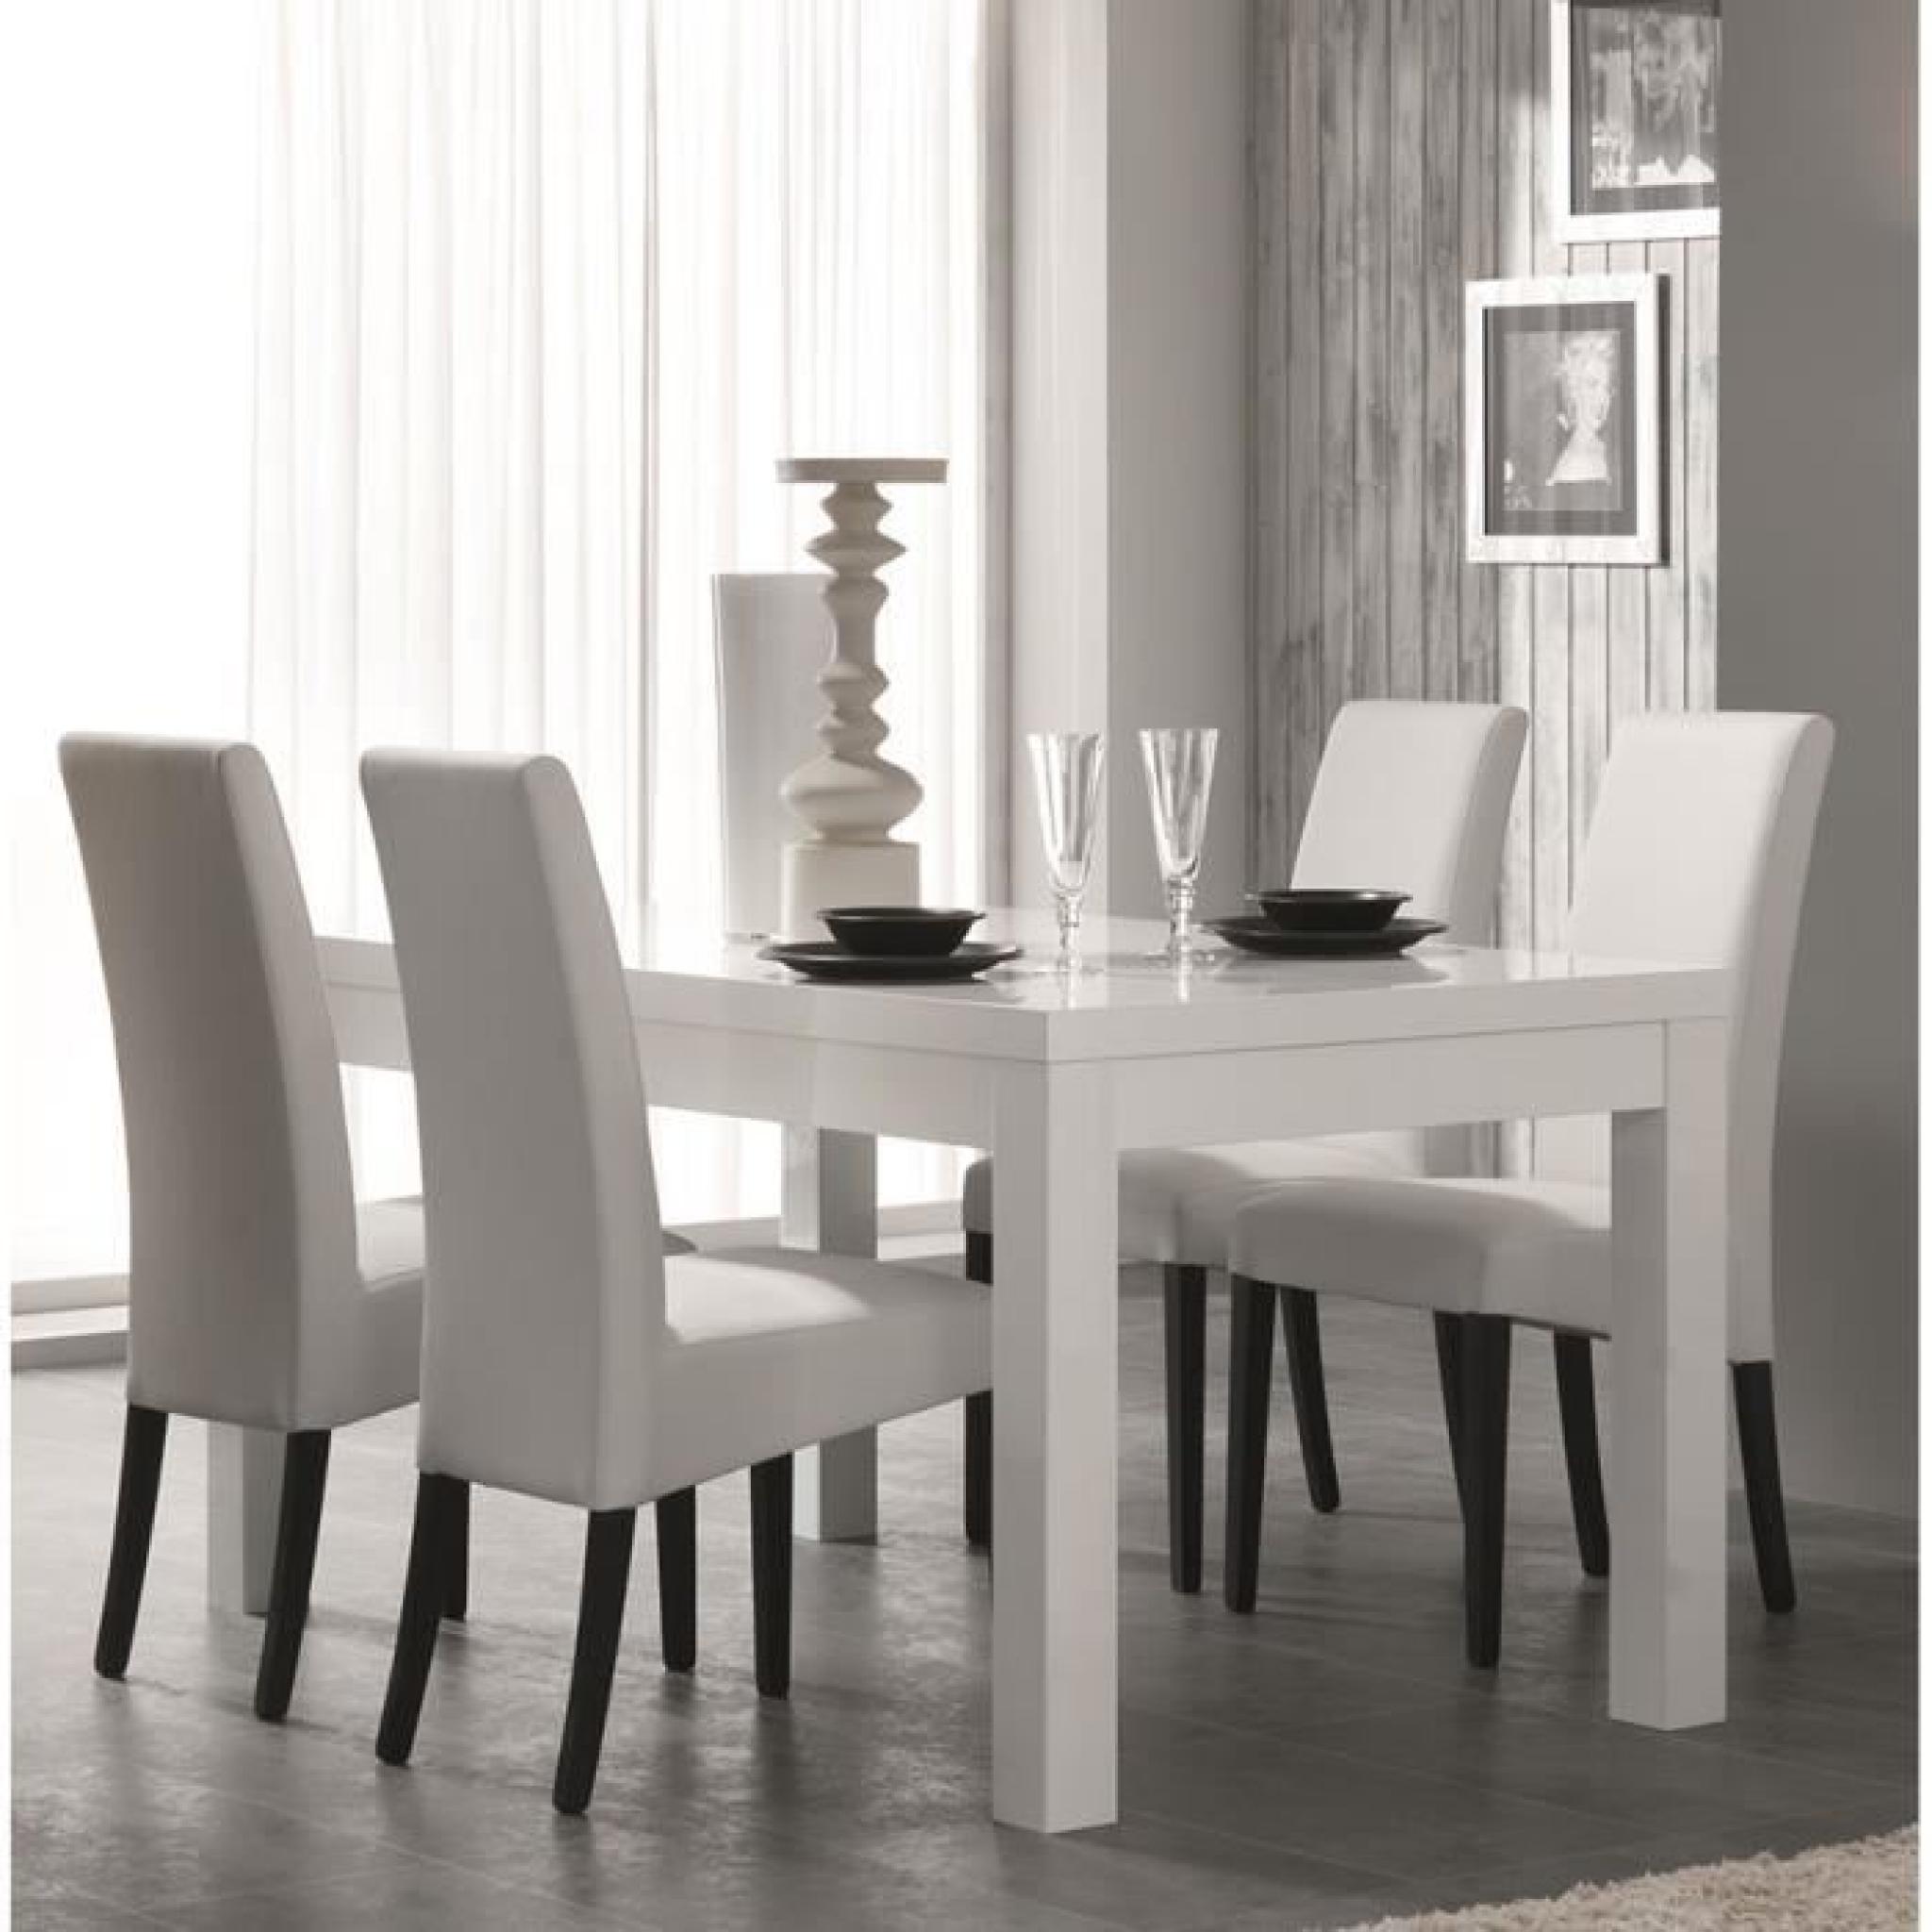 Table à manger blanc laqué design DIVINE Table 190 cm